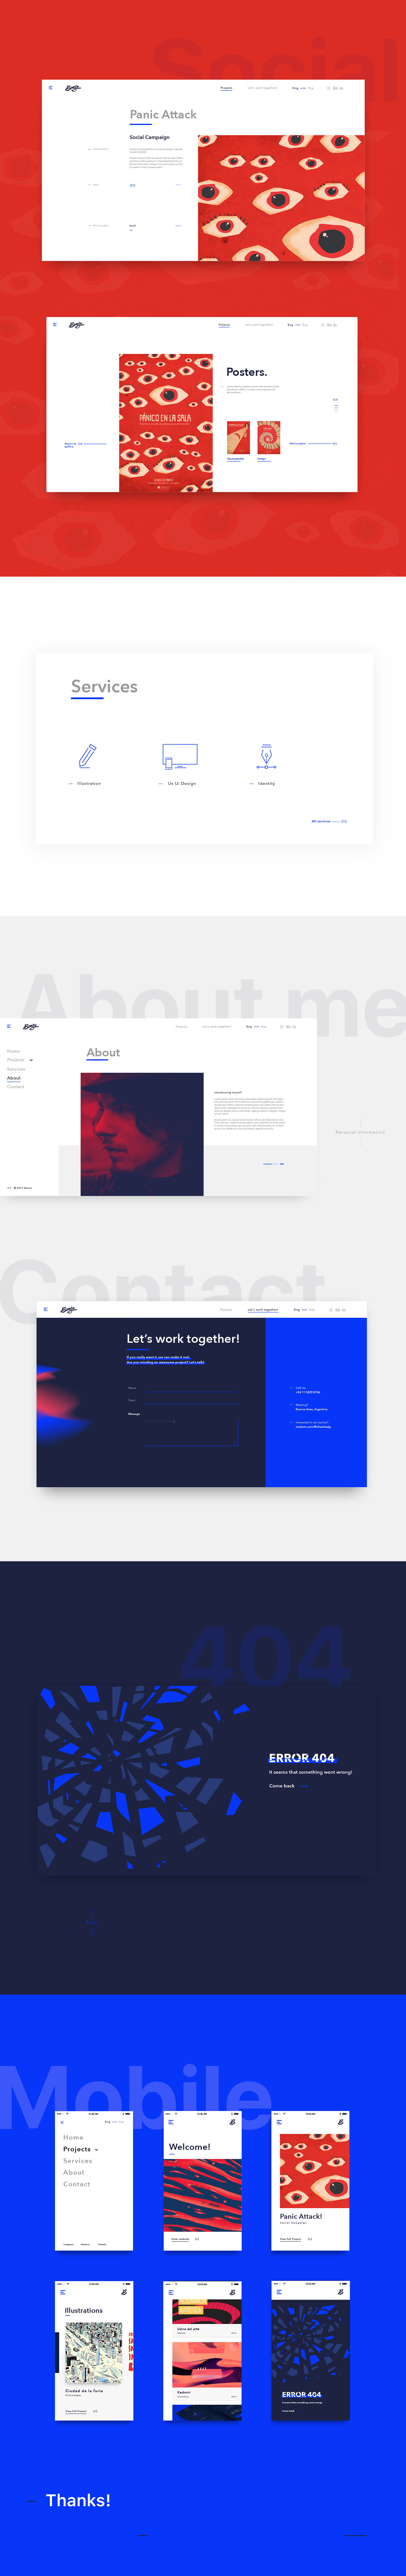 UX UI Website protfolio Self Promotion material design visual design UI Responsive branding  concept